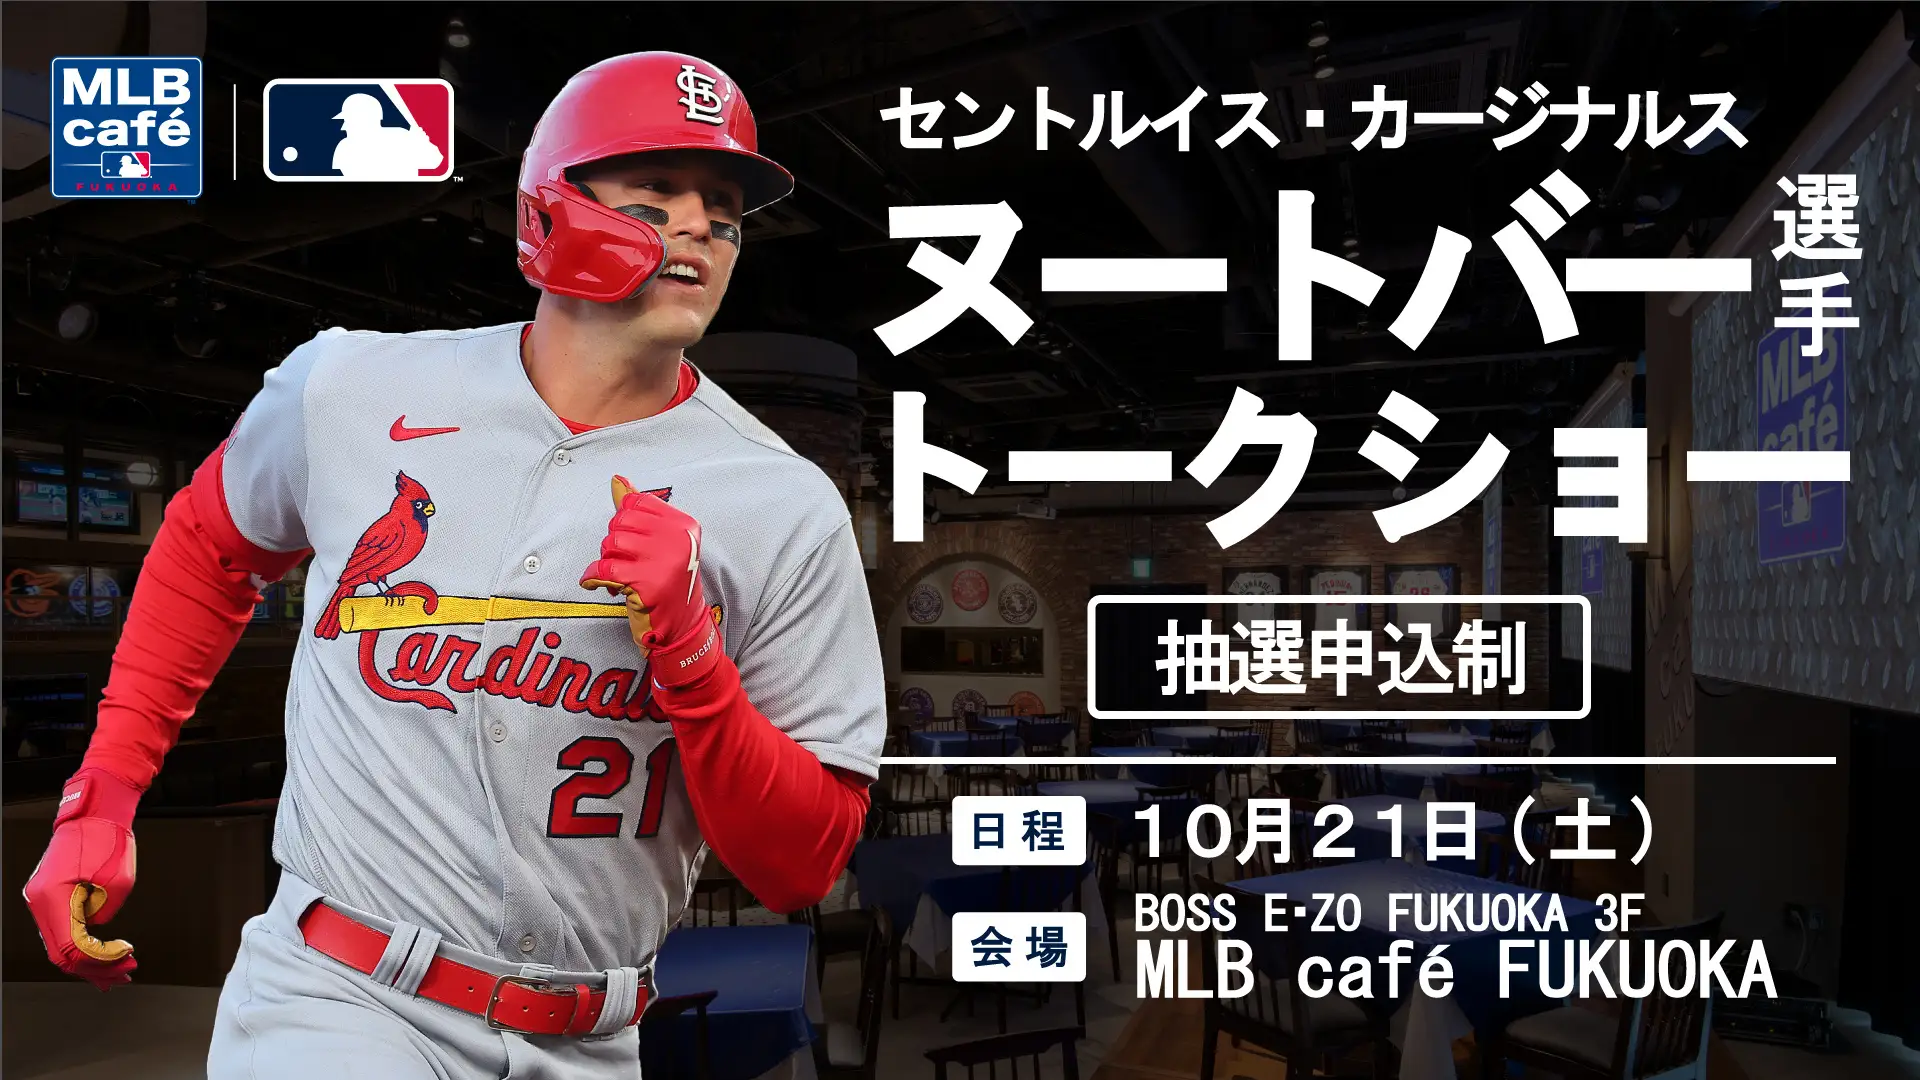 ラーズ・ヌートバーの来日が決定！10月21日（土）に「MLB café FUKUOKA」にてトークショーが開催！